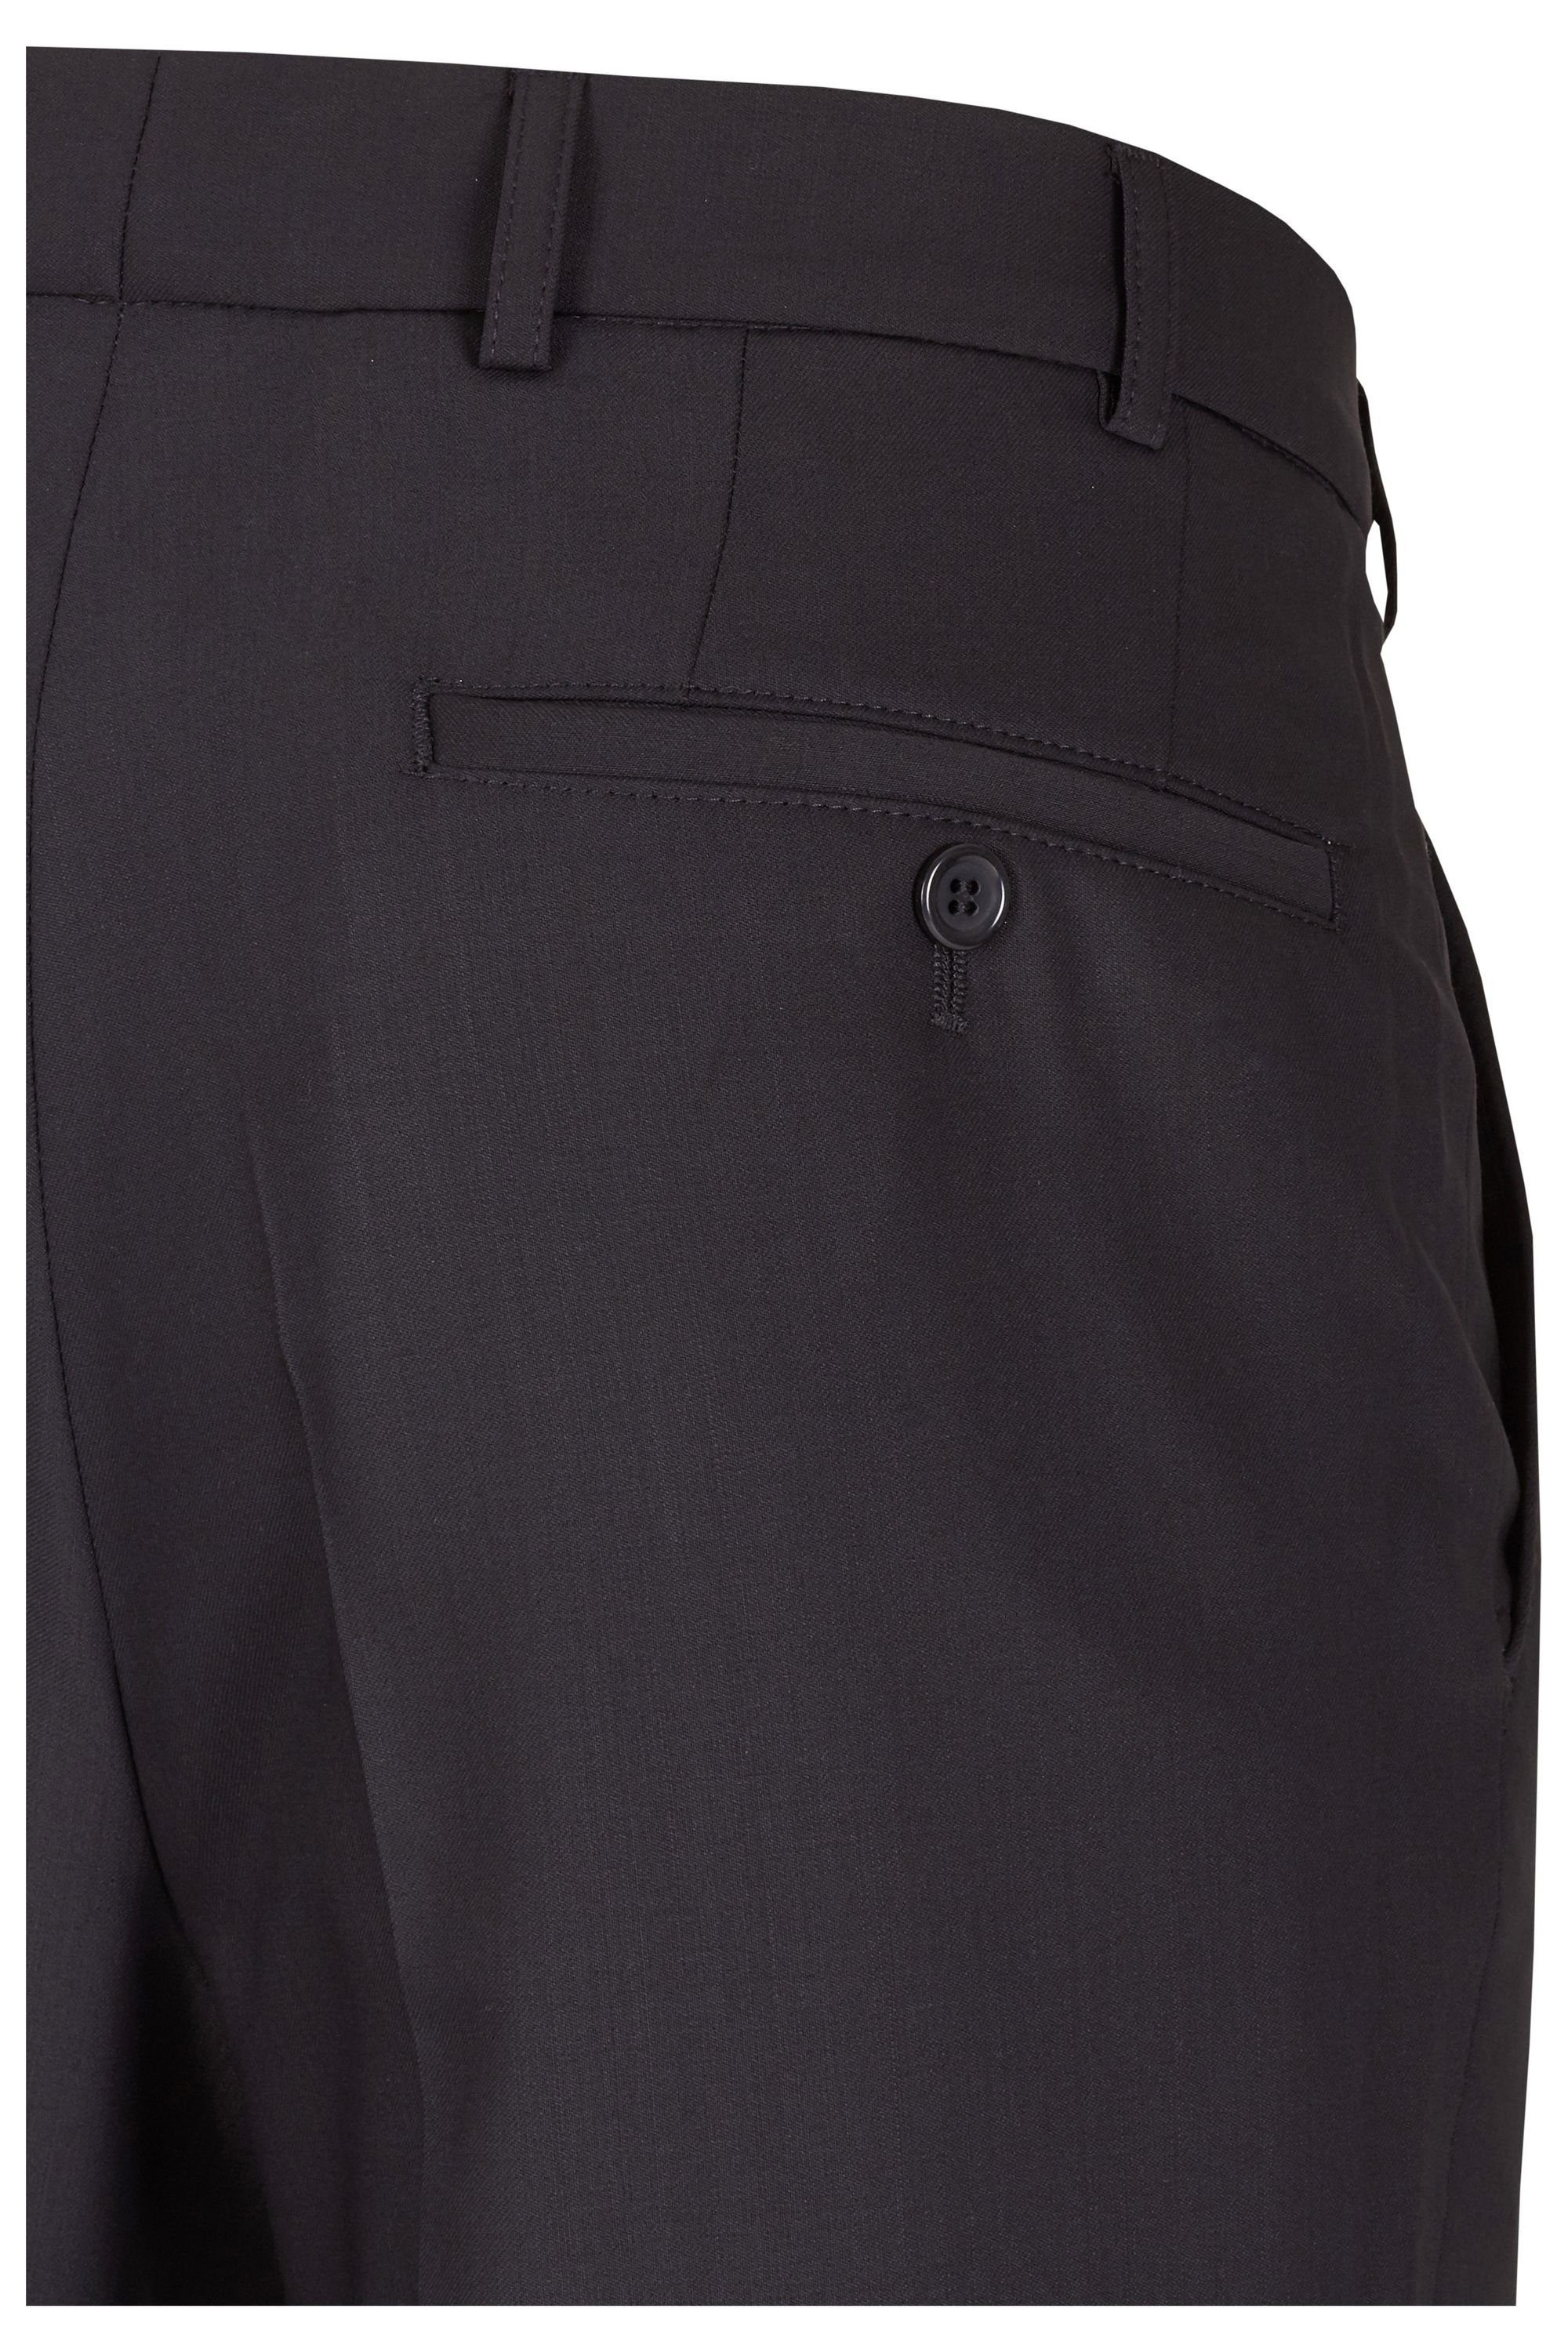 aubi: Stoffhose aubi Modern Fit Modell Anzughose Herren Front schwarz Flat Businesshose (50) 188